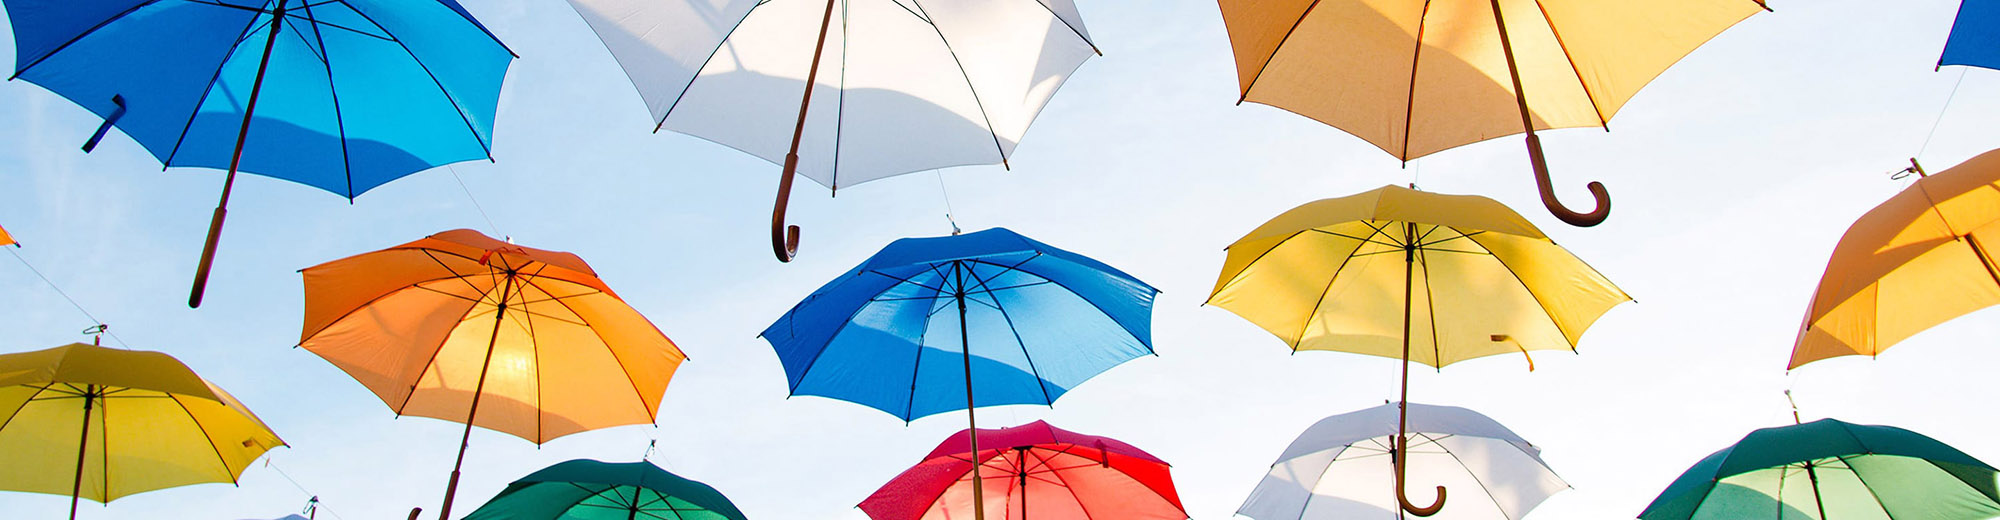 Array of rainbow umbrellas against clear blue sky